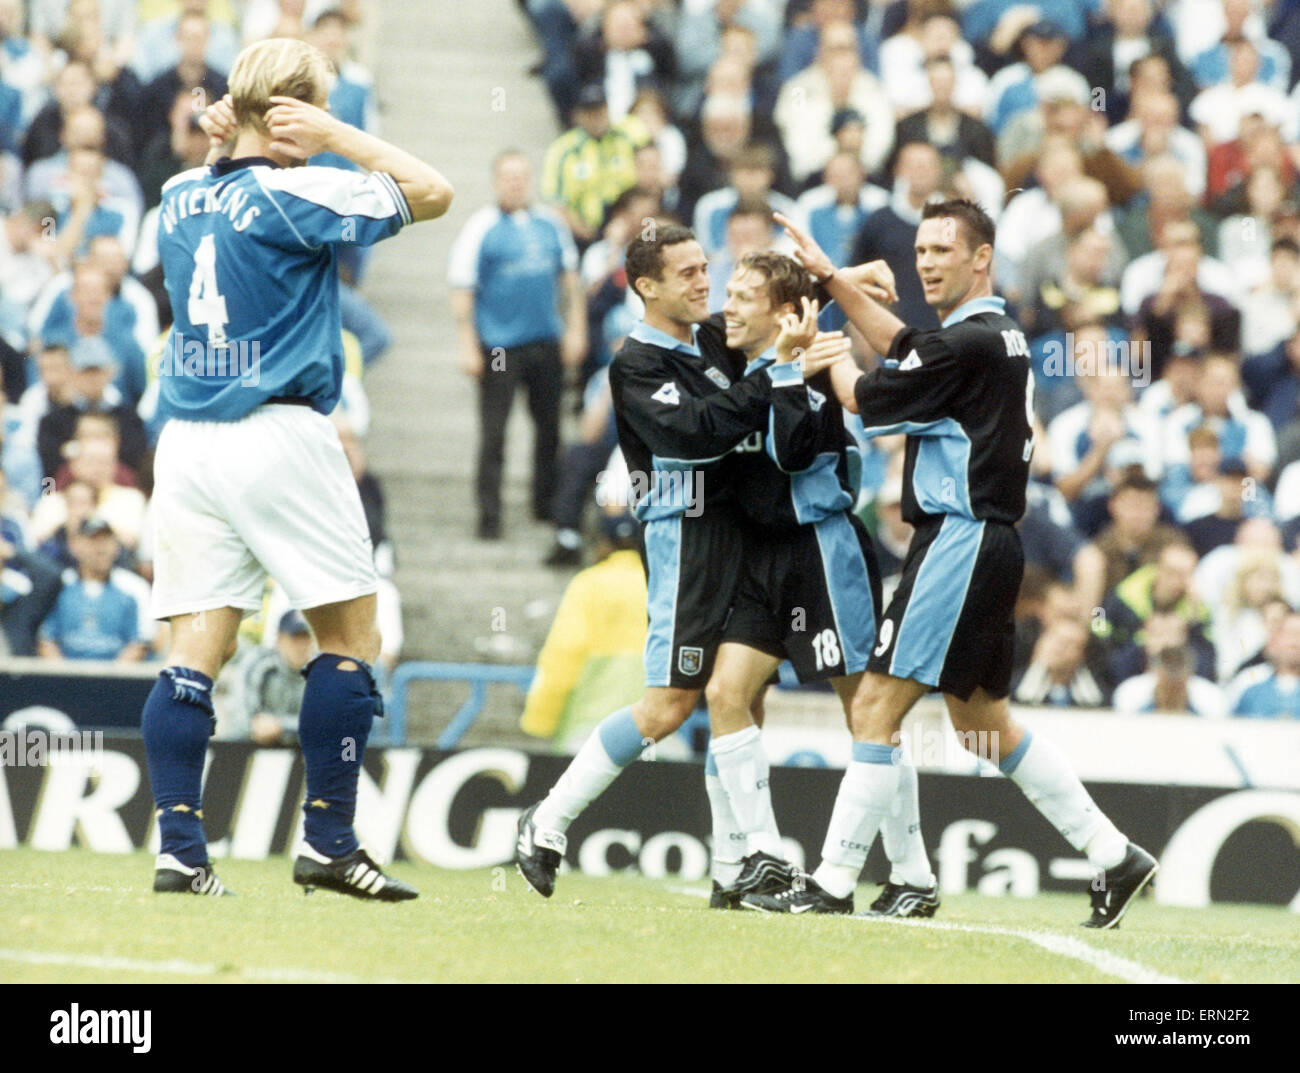 Manchester City 1-2 Coventry City, league match alla strada principale, 26 agosto 2000. Craig Bellamy, Coventry City Football Player in azione, punteggi obiettivo di apertura. Foto Stock